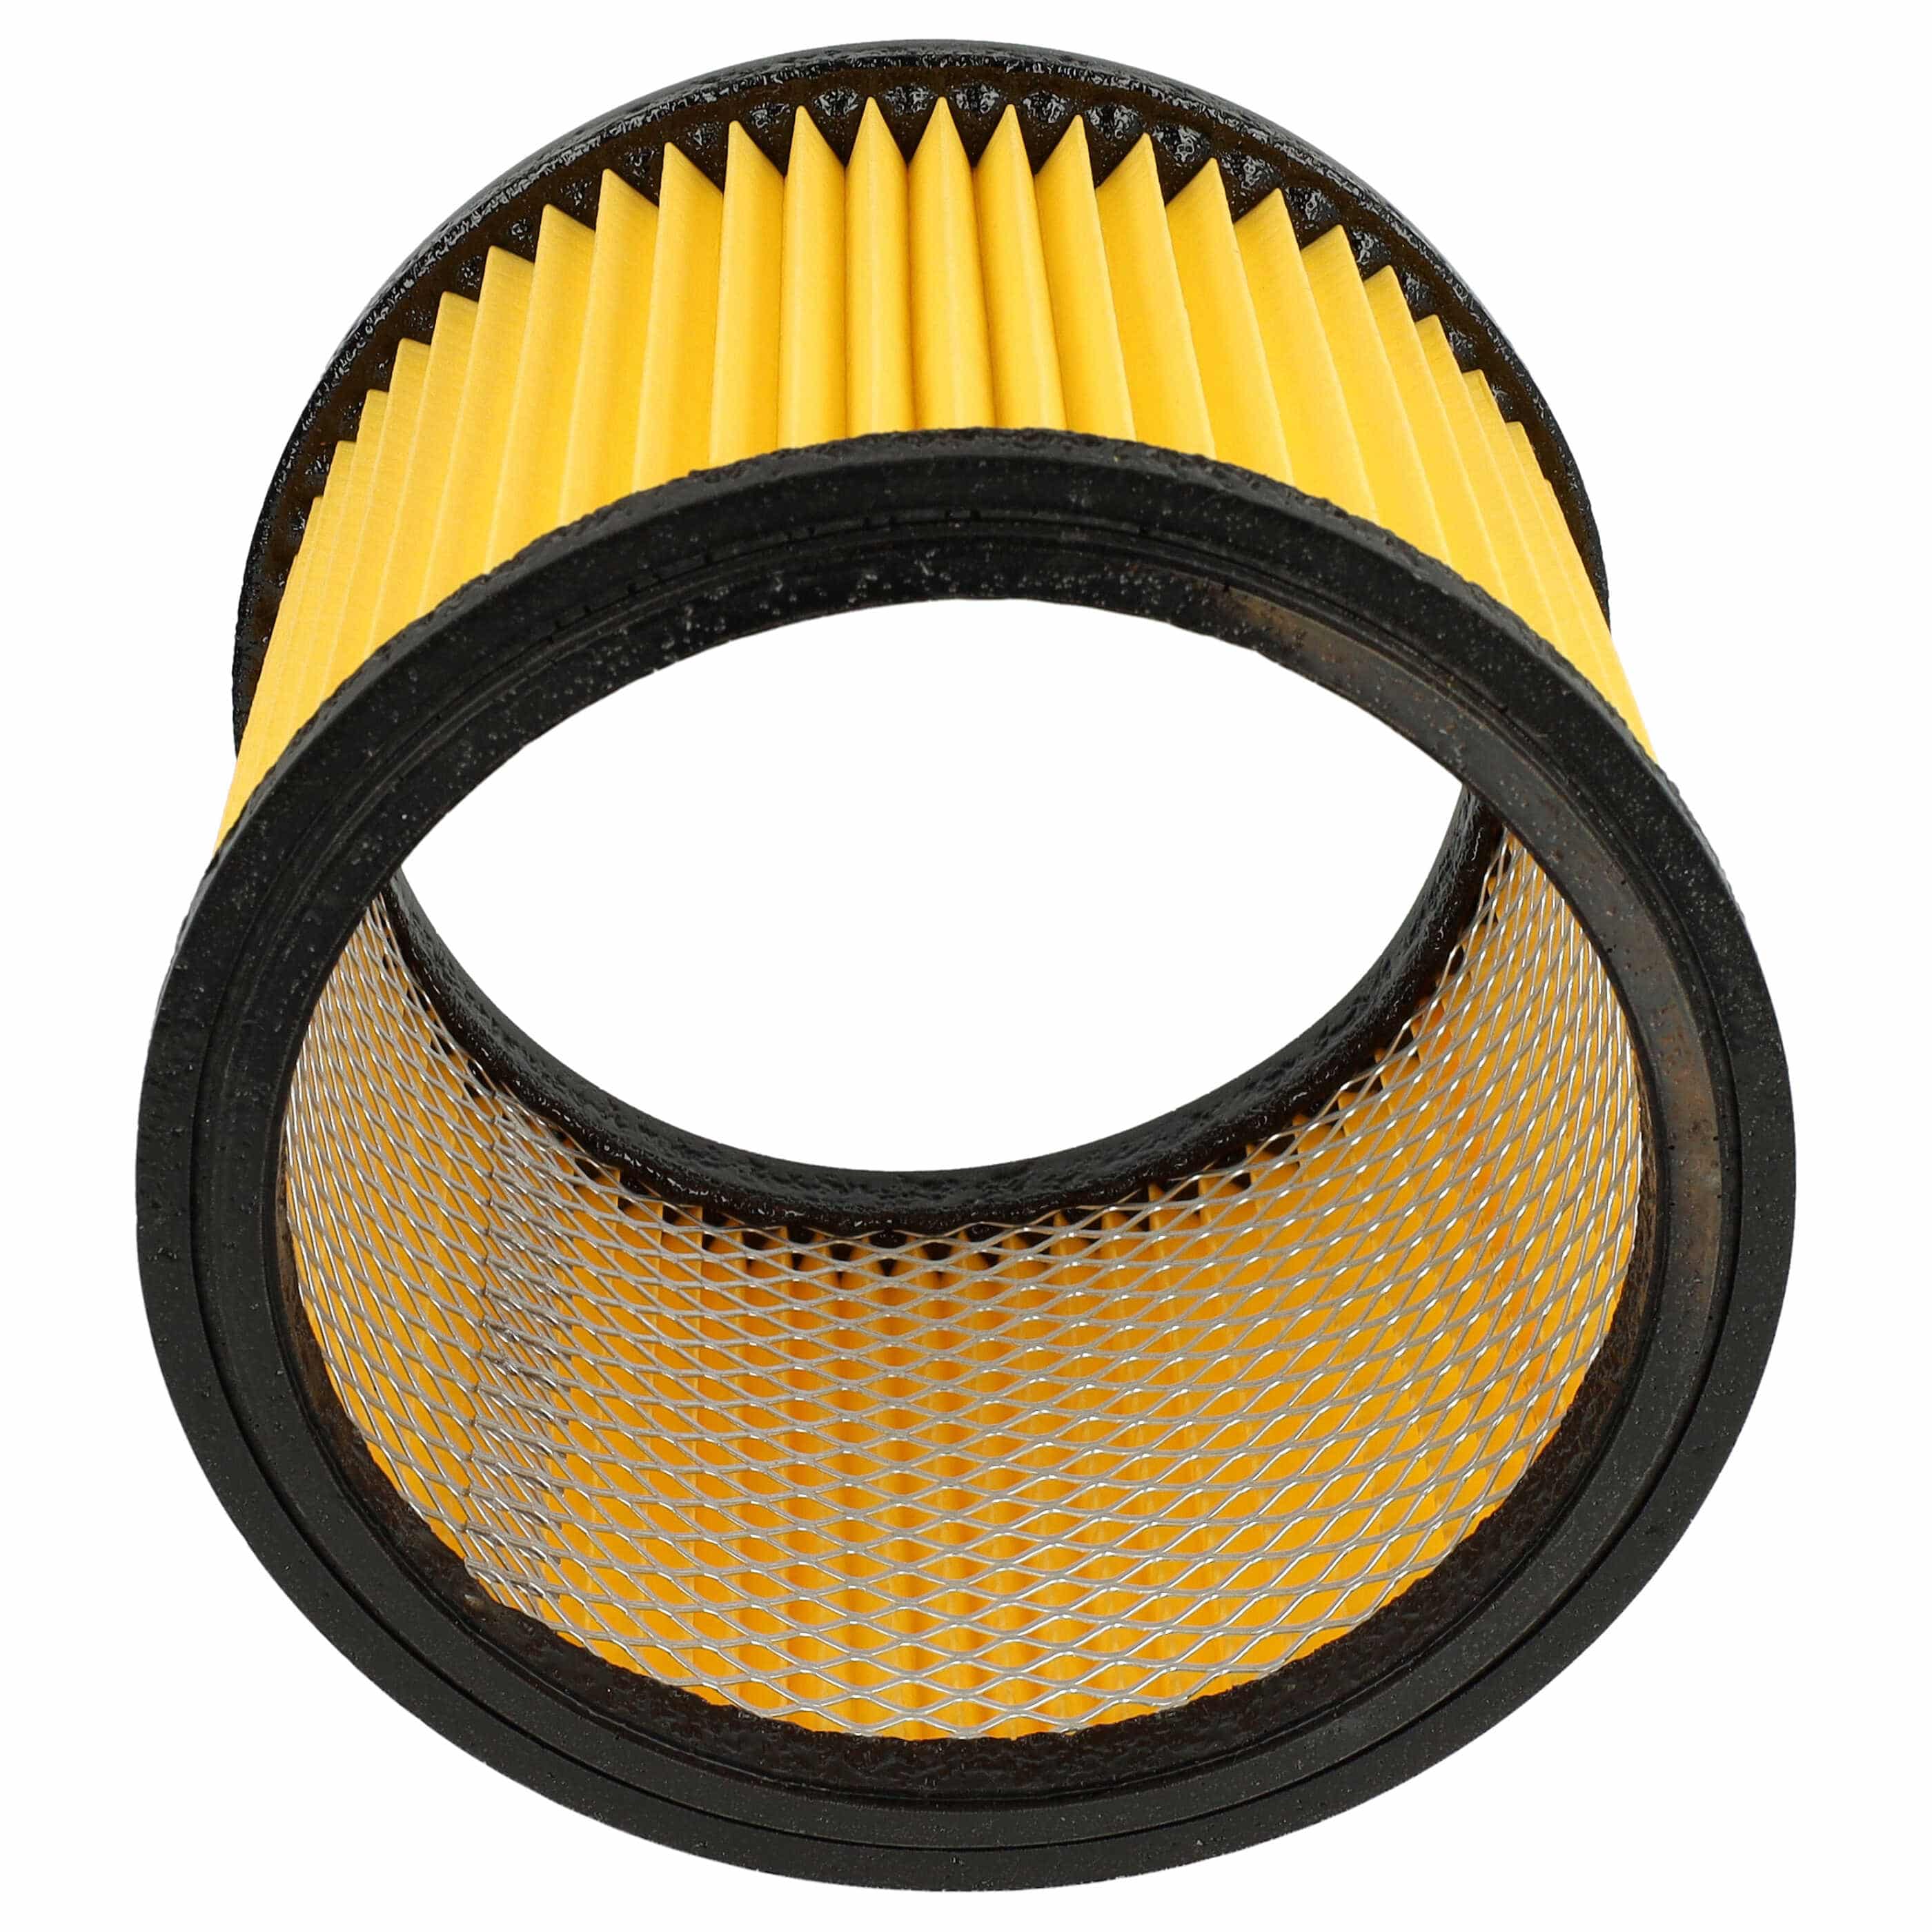 Filtro sostituisce Einhell 23.424.25, 23.421.75, 23.421.67 per aspirapolvere - filtro a pieghe, nero / giallo